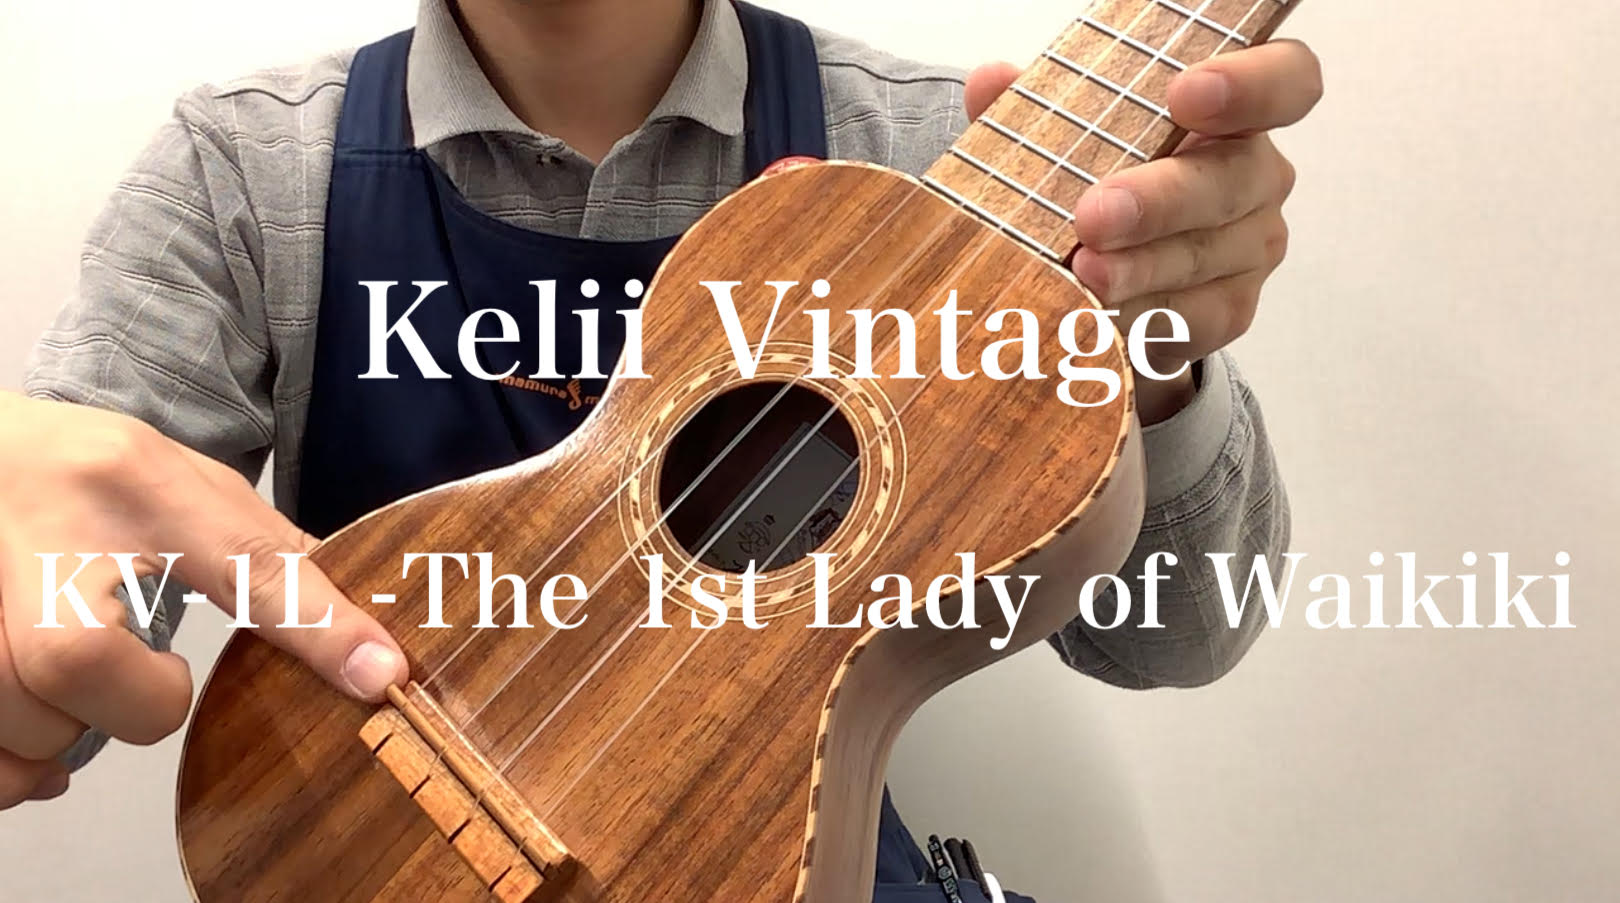 *Kelii Vintage こんにちは島村楽器 松本店 ウクレレ担当の沖田です。 ただいま店頭にて展示中の『Kelii Vintage』についてご紹介させて頂きます。 **Kelii ハワイ・オアフ島でウクレレを製作するケリィ。元々ミュージシャンでもある創設者のデザインするウクレレは、シンプルな装 […]